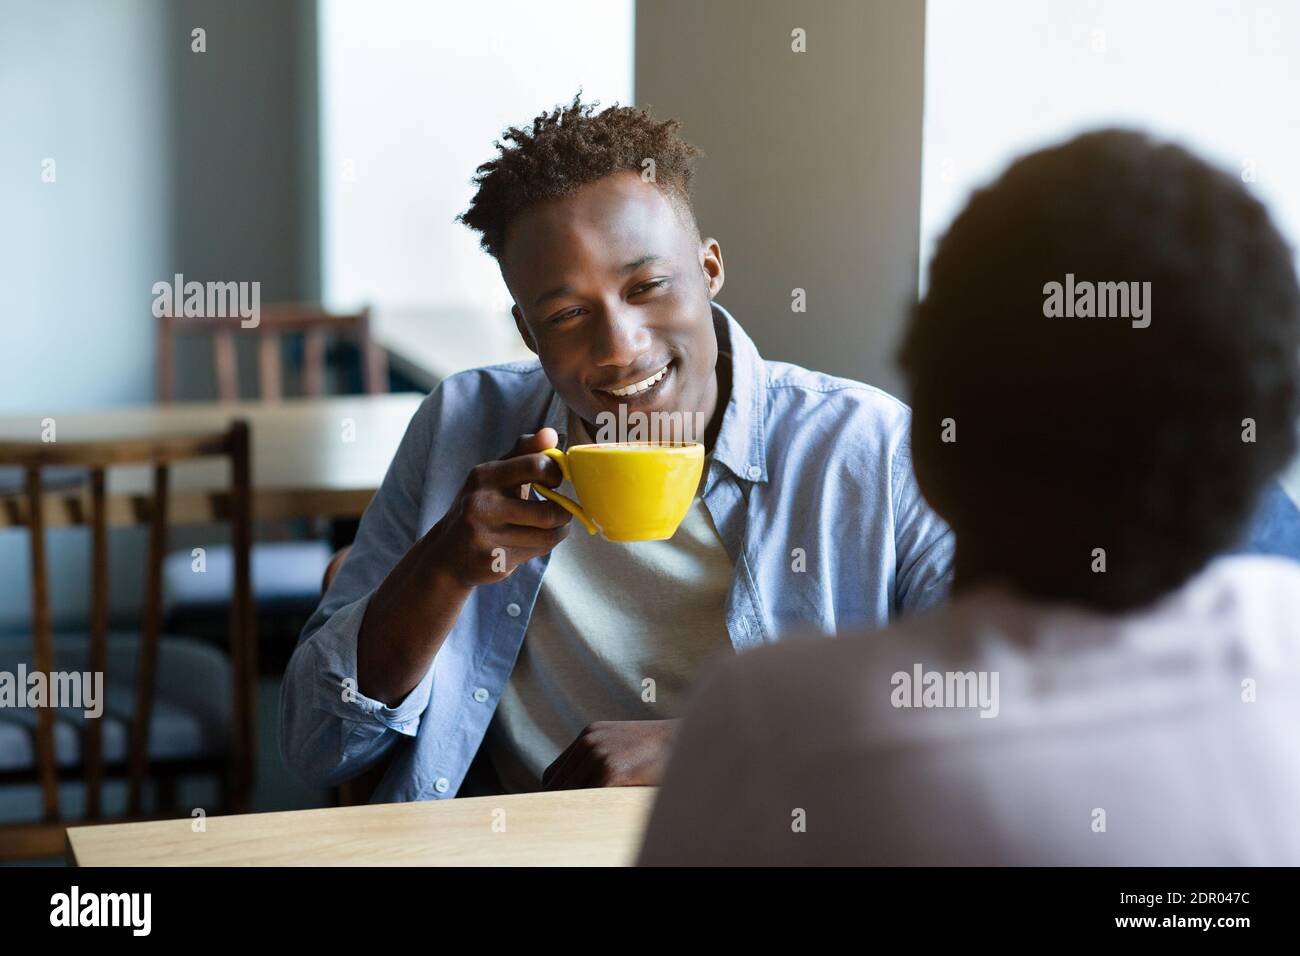 Adorabile coppia nera che chiacchiera nel bar a pranzo, avendo la prima data, iniziando una relazione romantica Foto Stock